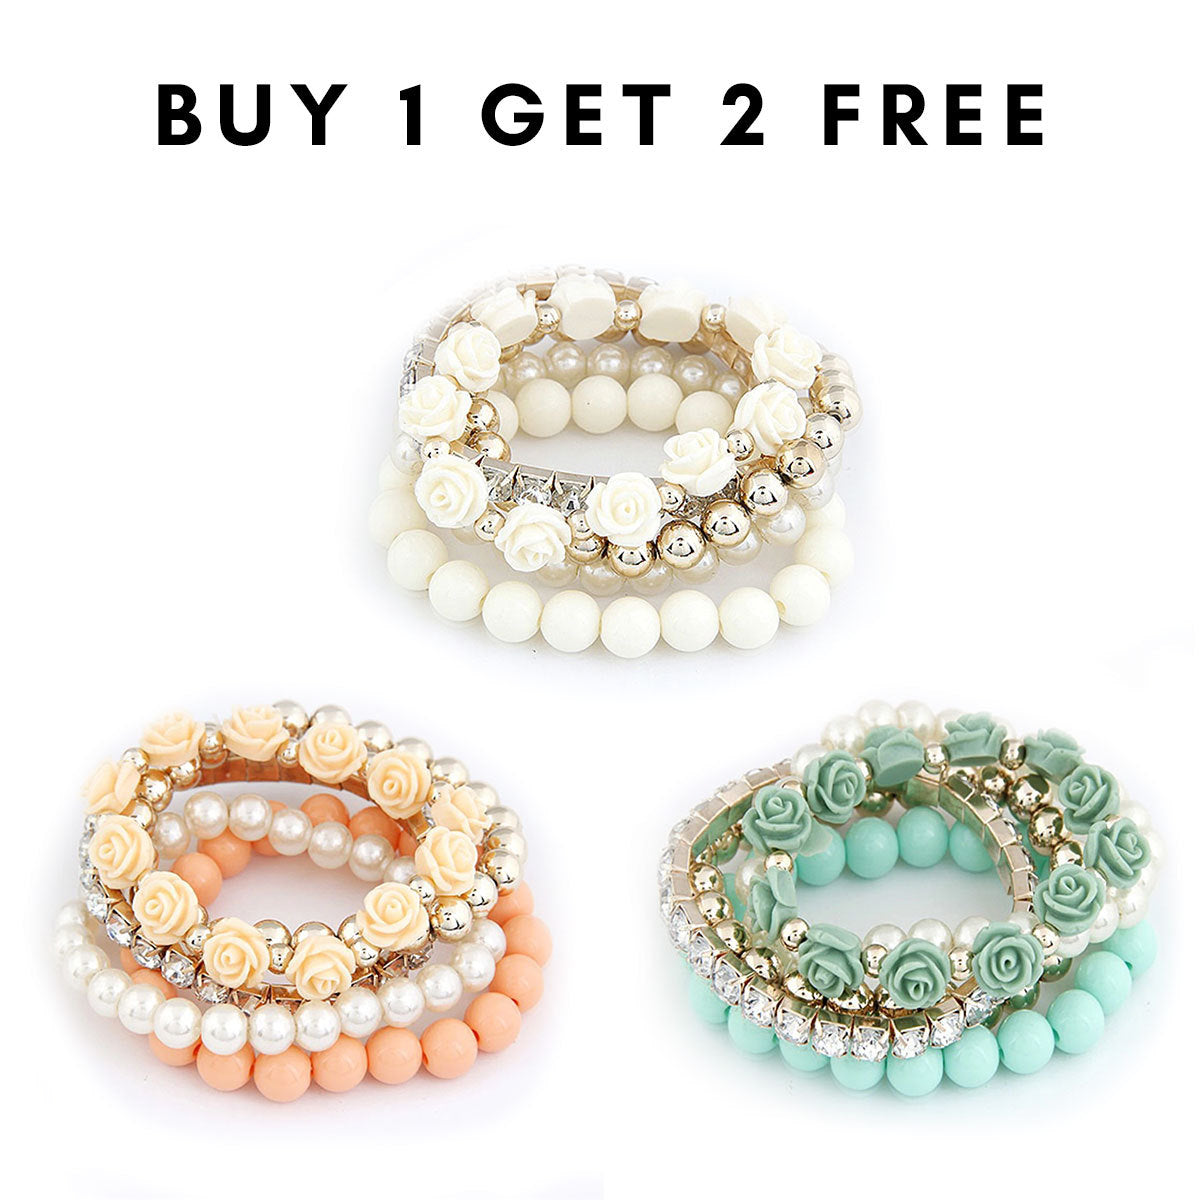 BUY 1 GET 2 FREE - Pastel Beauty Bracelets Stack